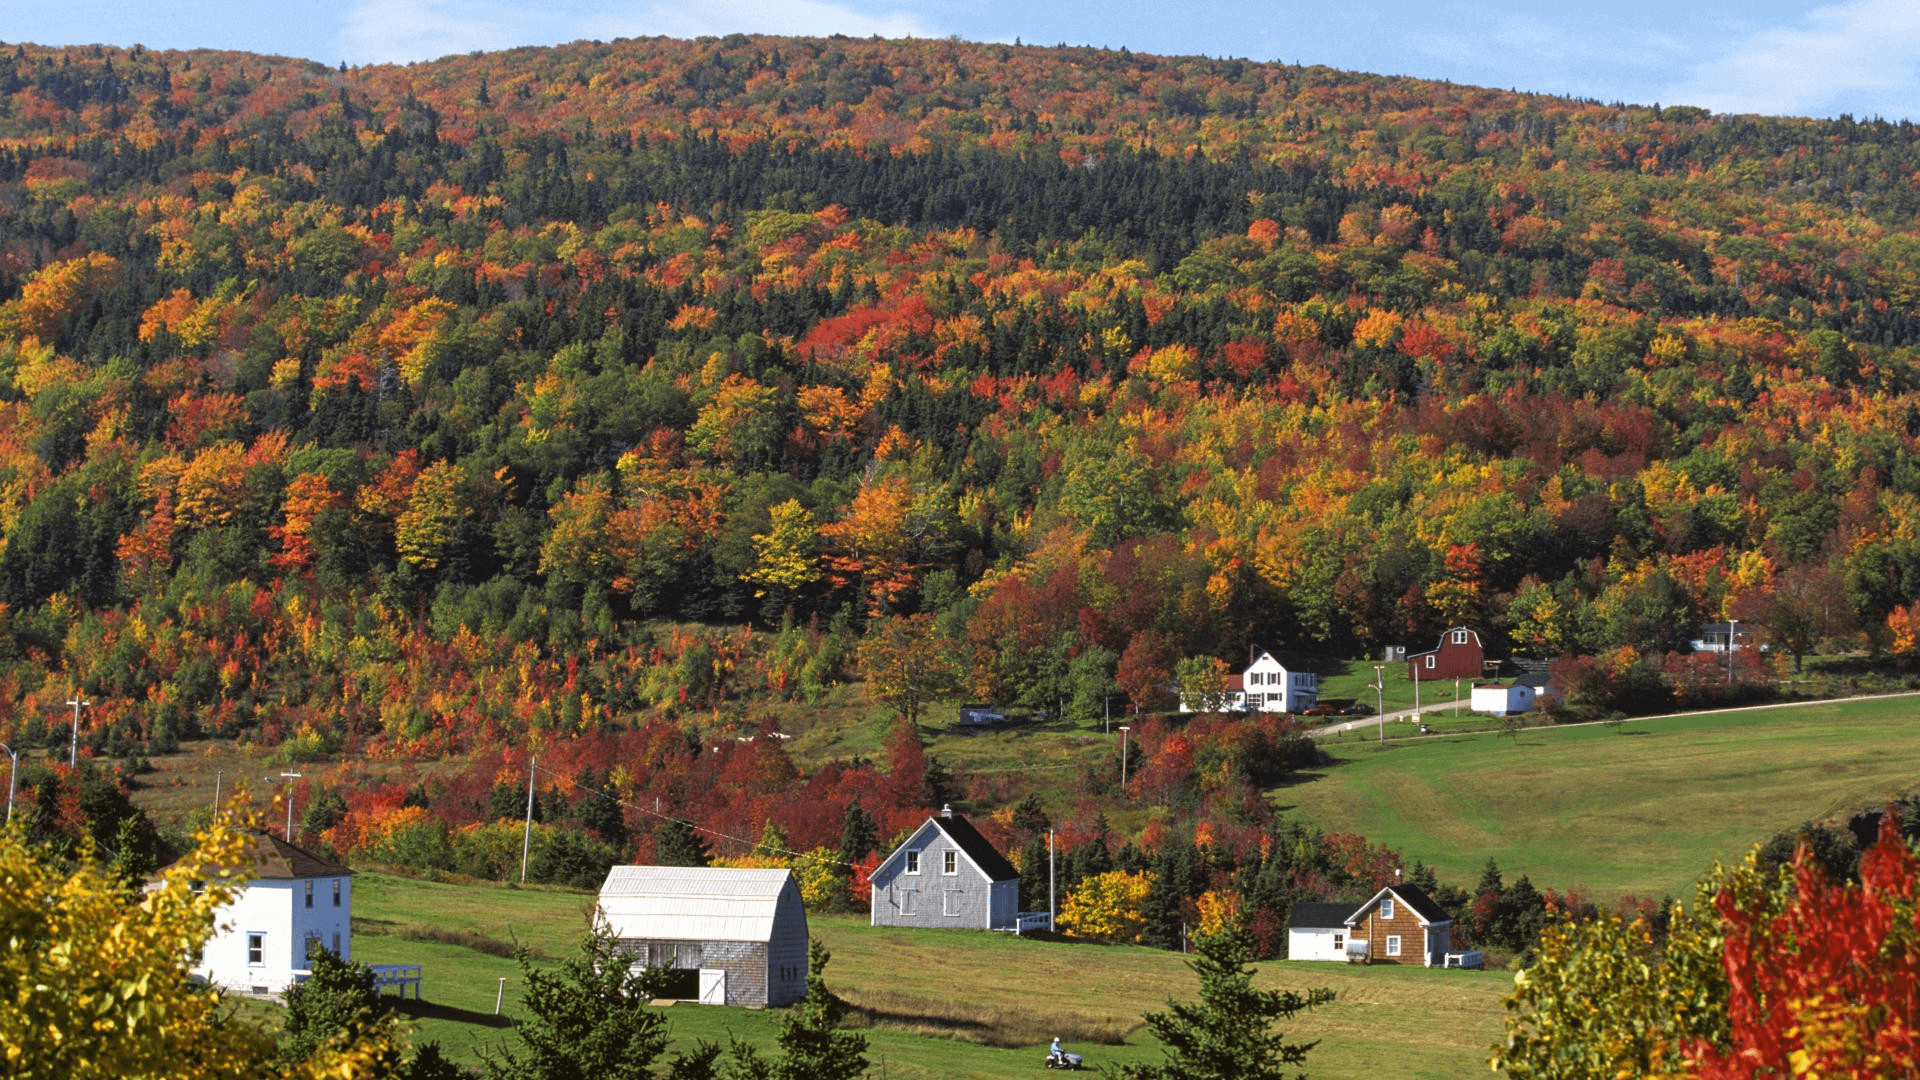 Autumn in Canada